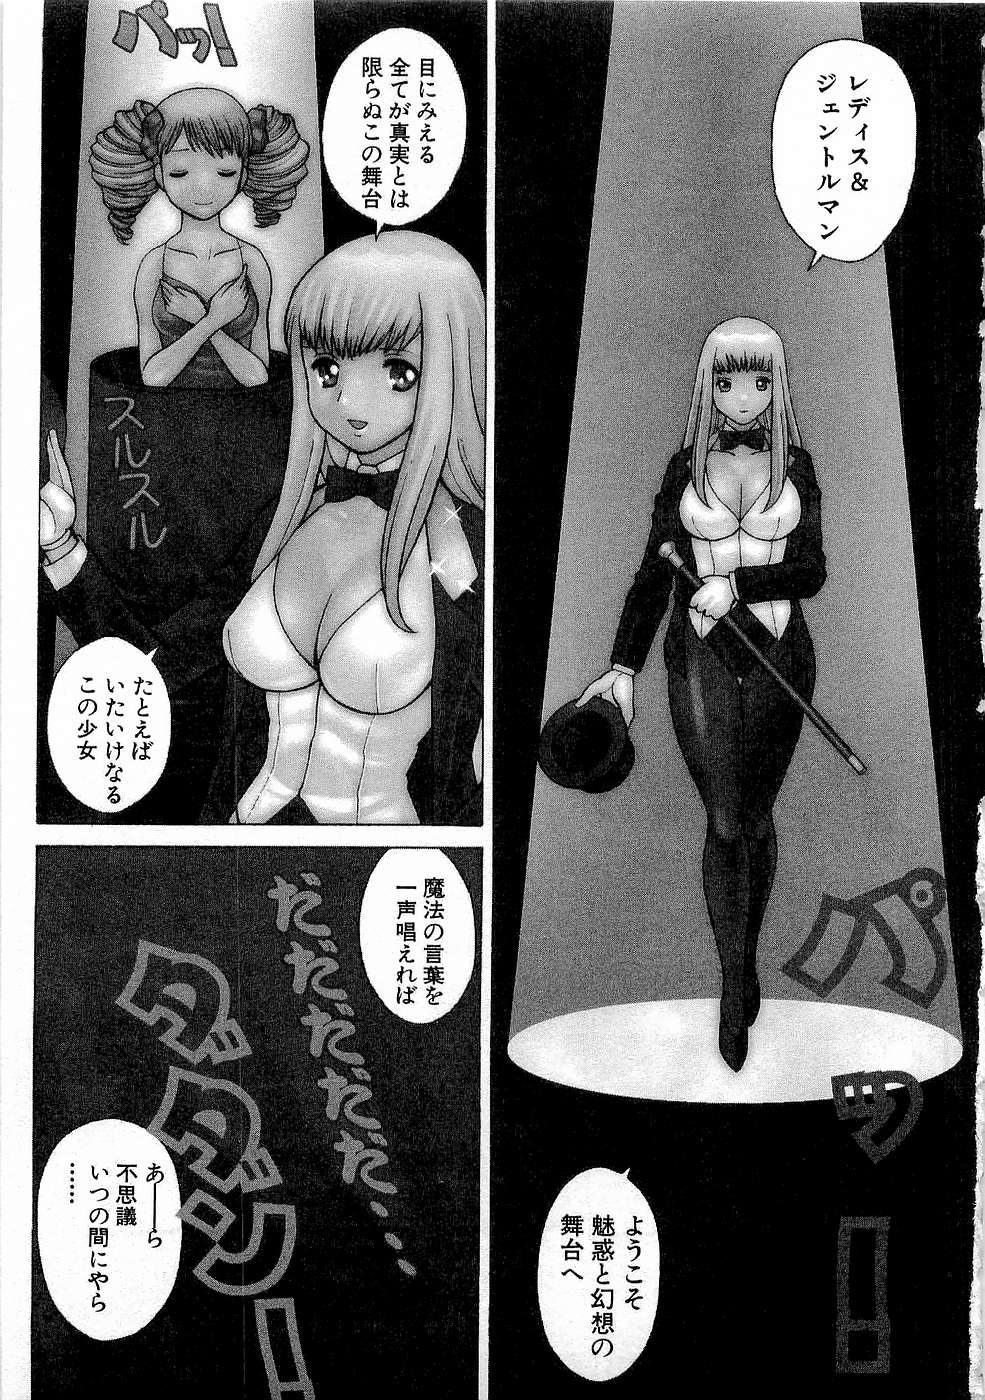 [Tamaki Nozomu] Nanairo Karen x3 Cosplay Complex page 8 full